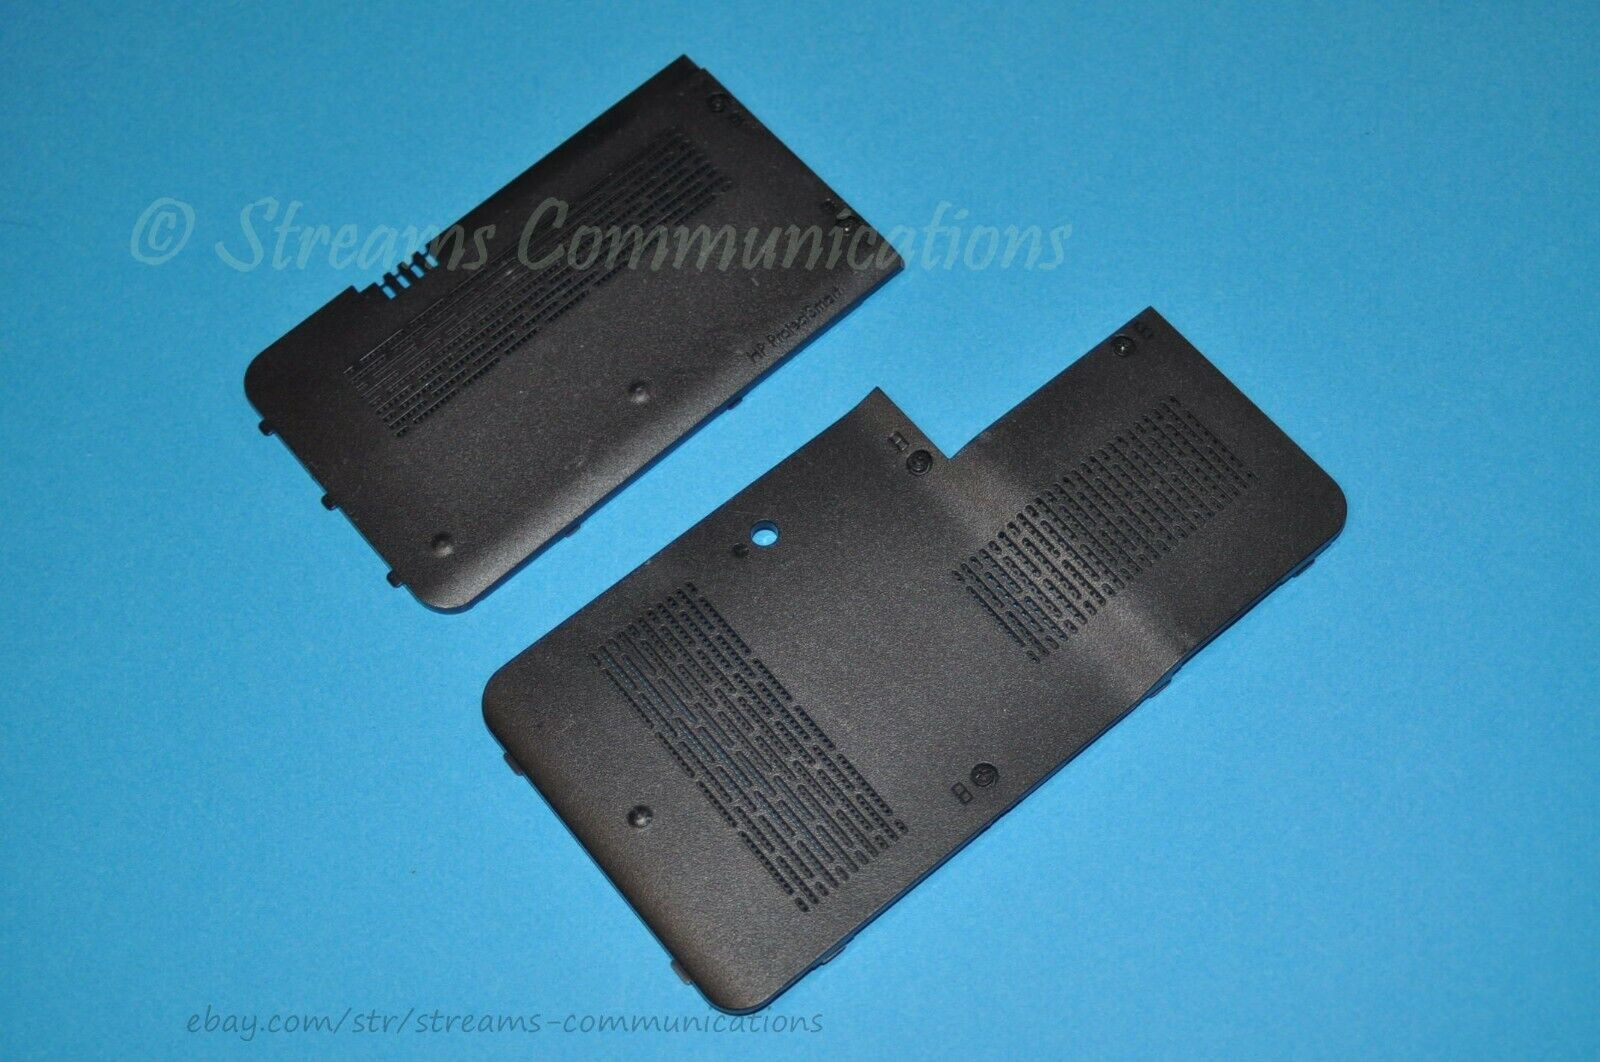 HP Pavilion DV6 dv6z-1100 Laptop HDD, Memory & WiFi Cover Doors